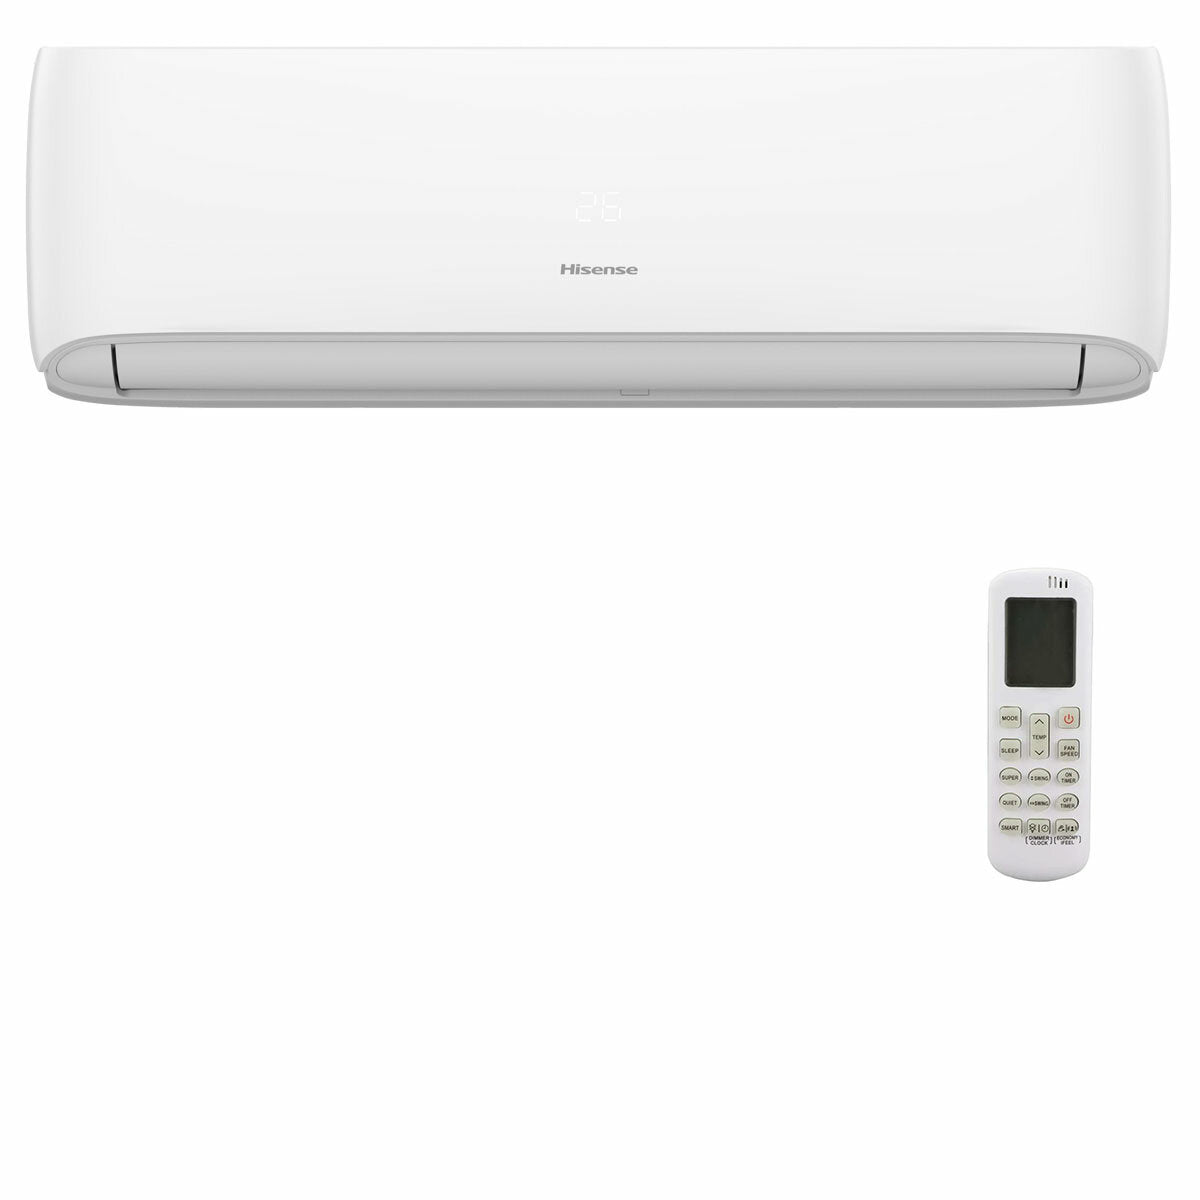 Hisense Hi-Comfort quadri split air conditioner 7000 + 7000 + 12000 + 24000 BTU wifi inverter outdoor unit 12.5 kW